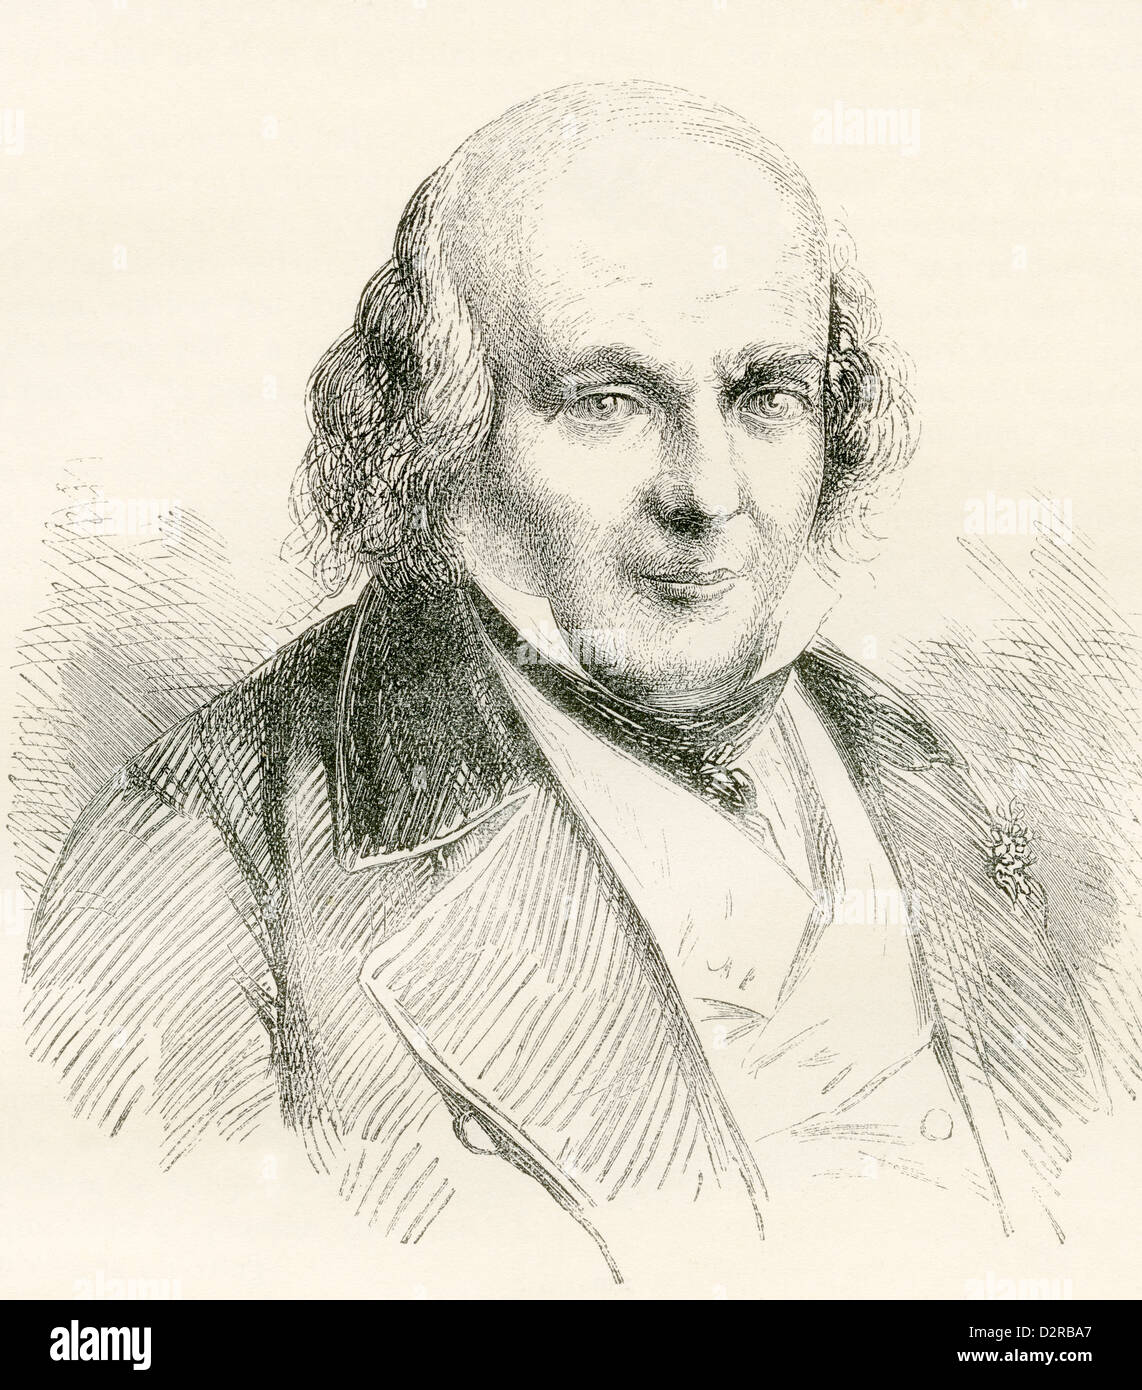 Pierre-Jean de Béranger, 1780 – 1857. French poet and chansonnier. Stock Photo